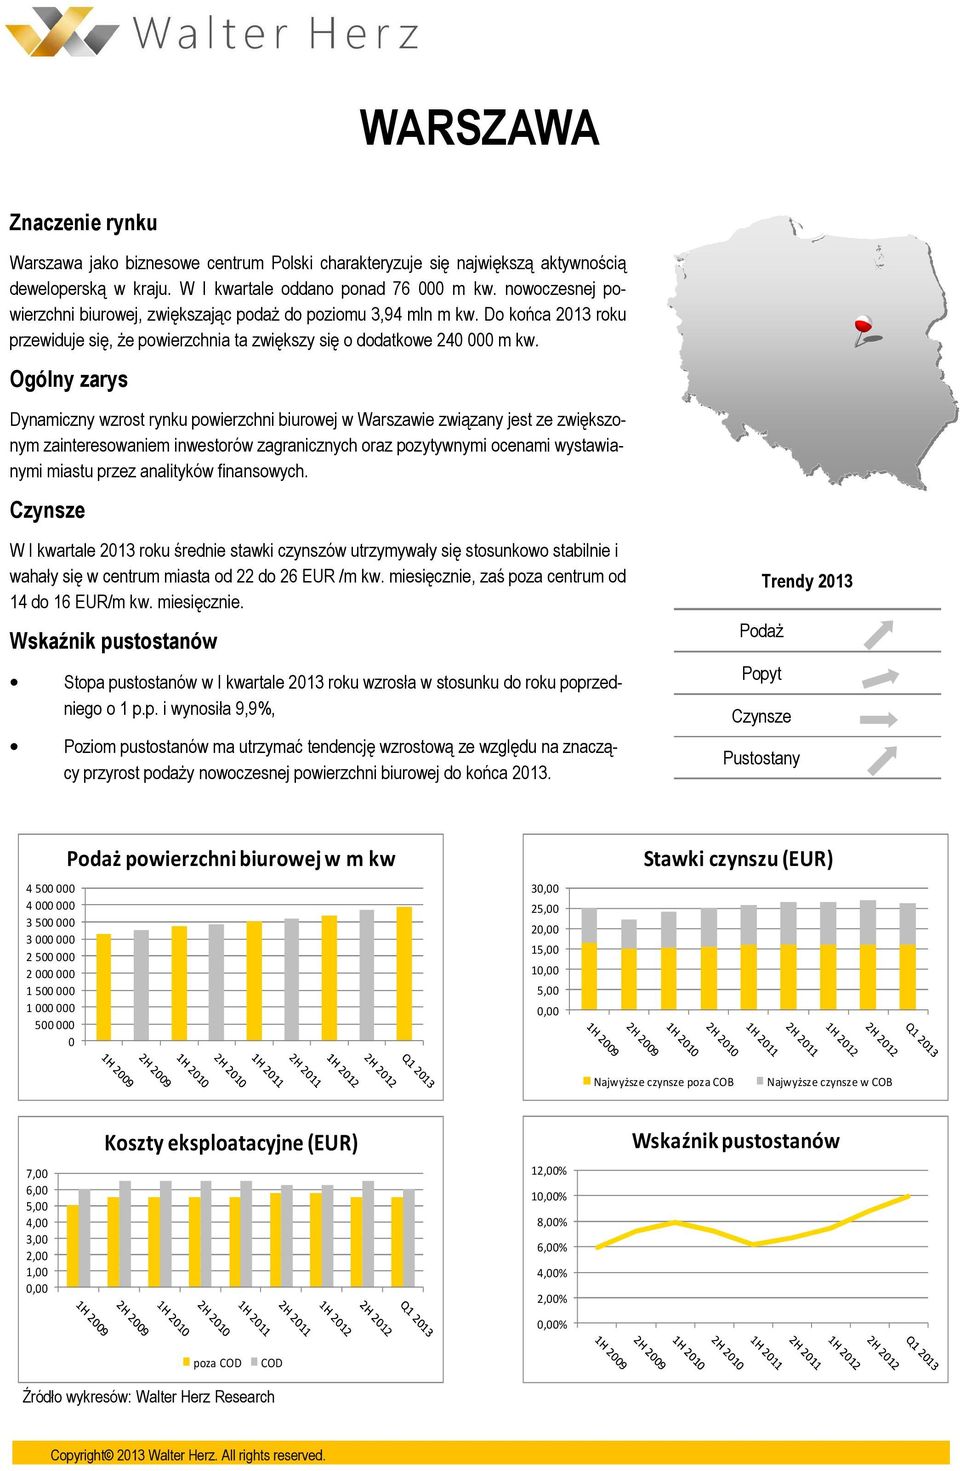 Dynamiczny wzrost rynku powierzchni biurowej w Warszawie związany jest ze zwiększonym zainteresowaniem inwestorów zagranicznych oraz pozytywnymi ocenami wystawianymi miastu przez analityków